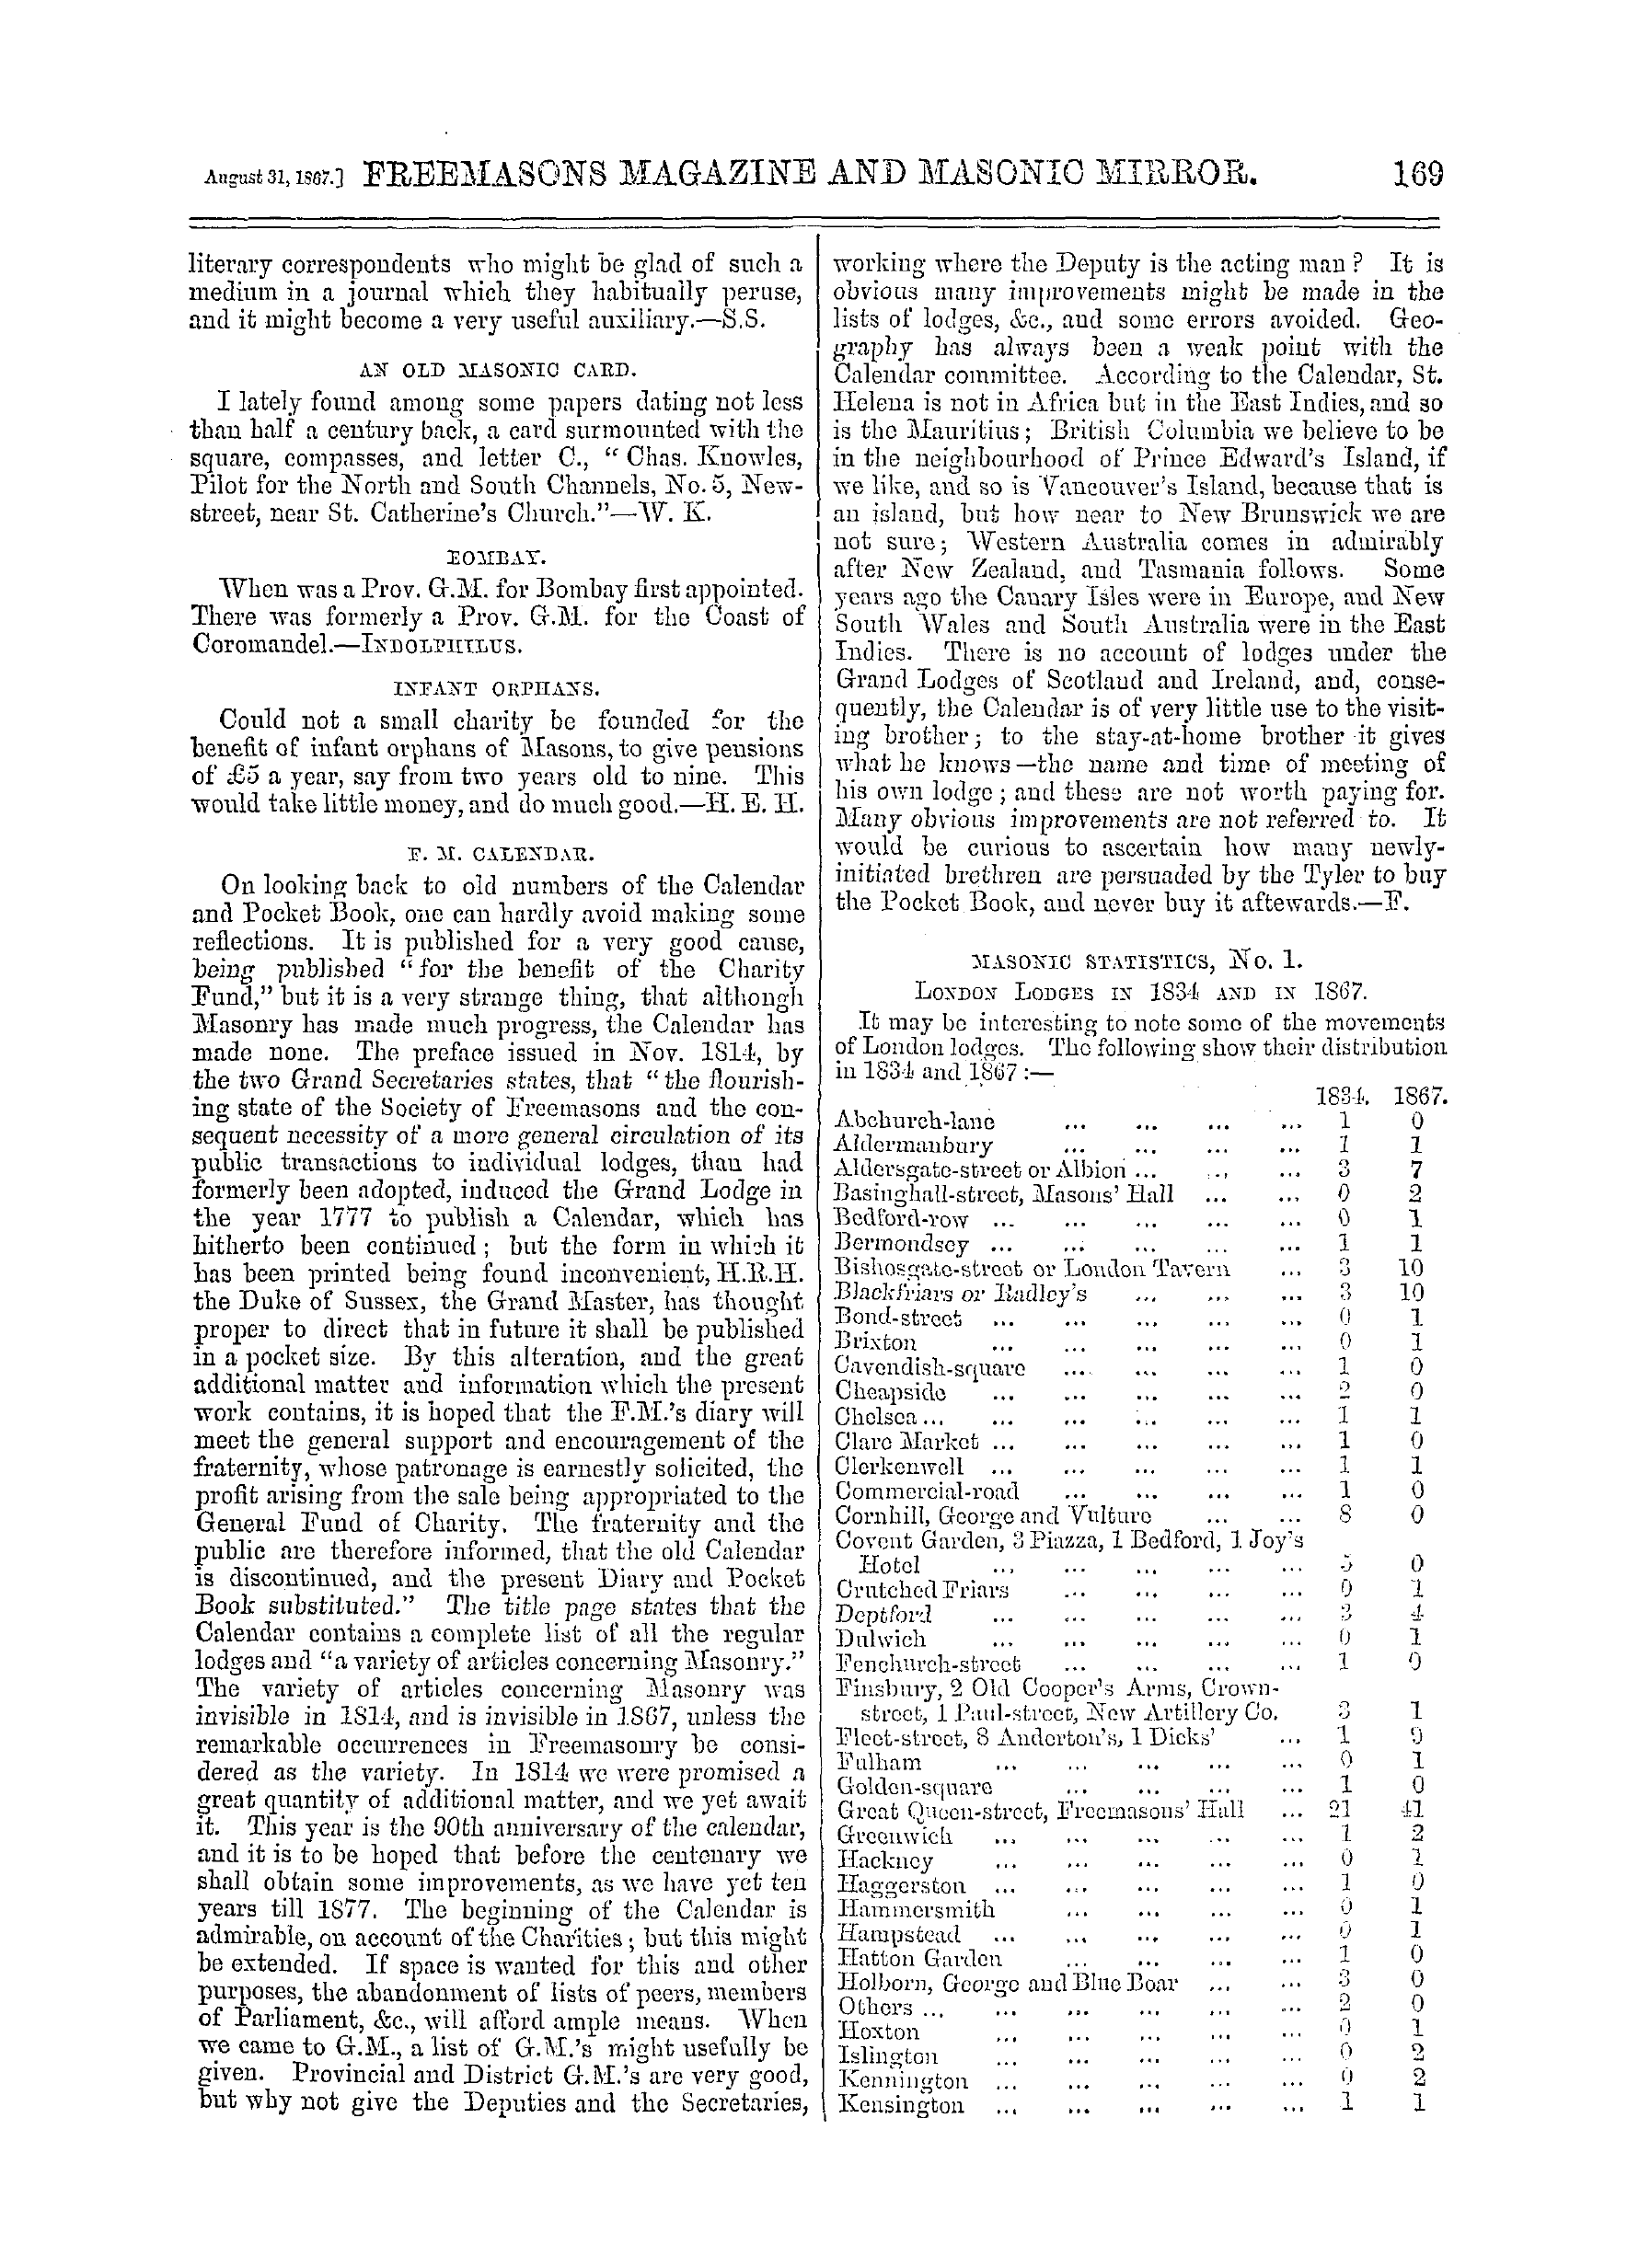 The Freemasons' Monthly Magazine: 1867-08-31: 9